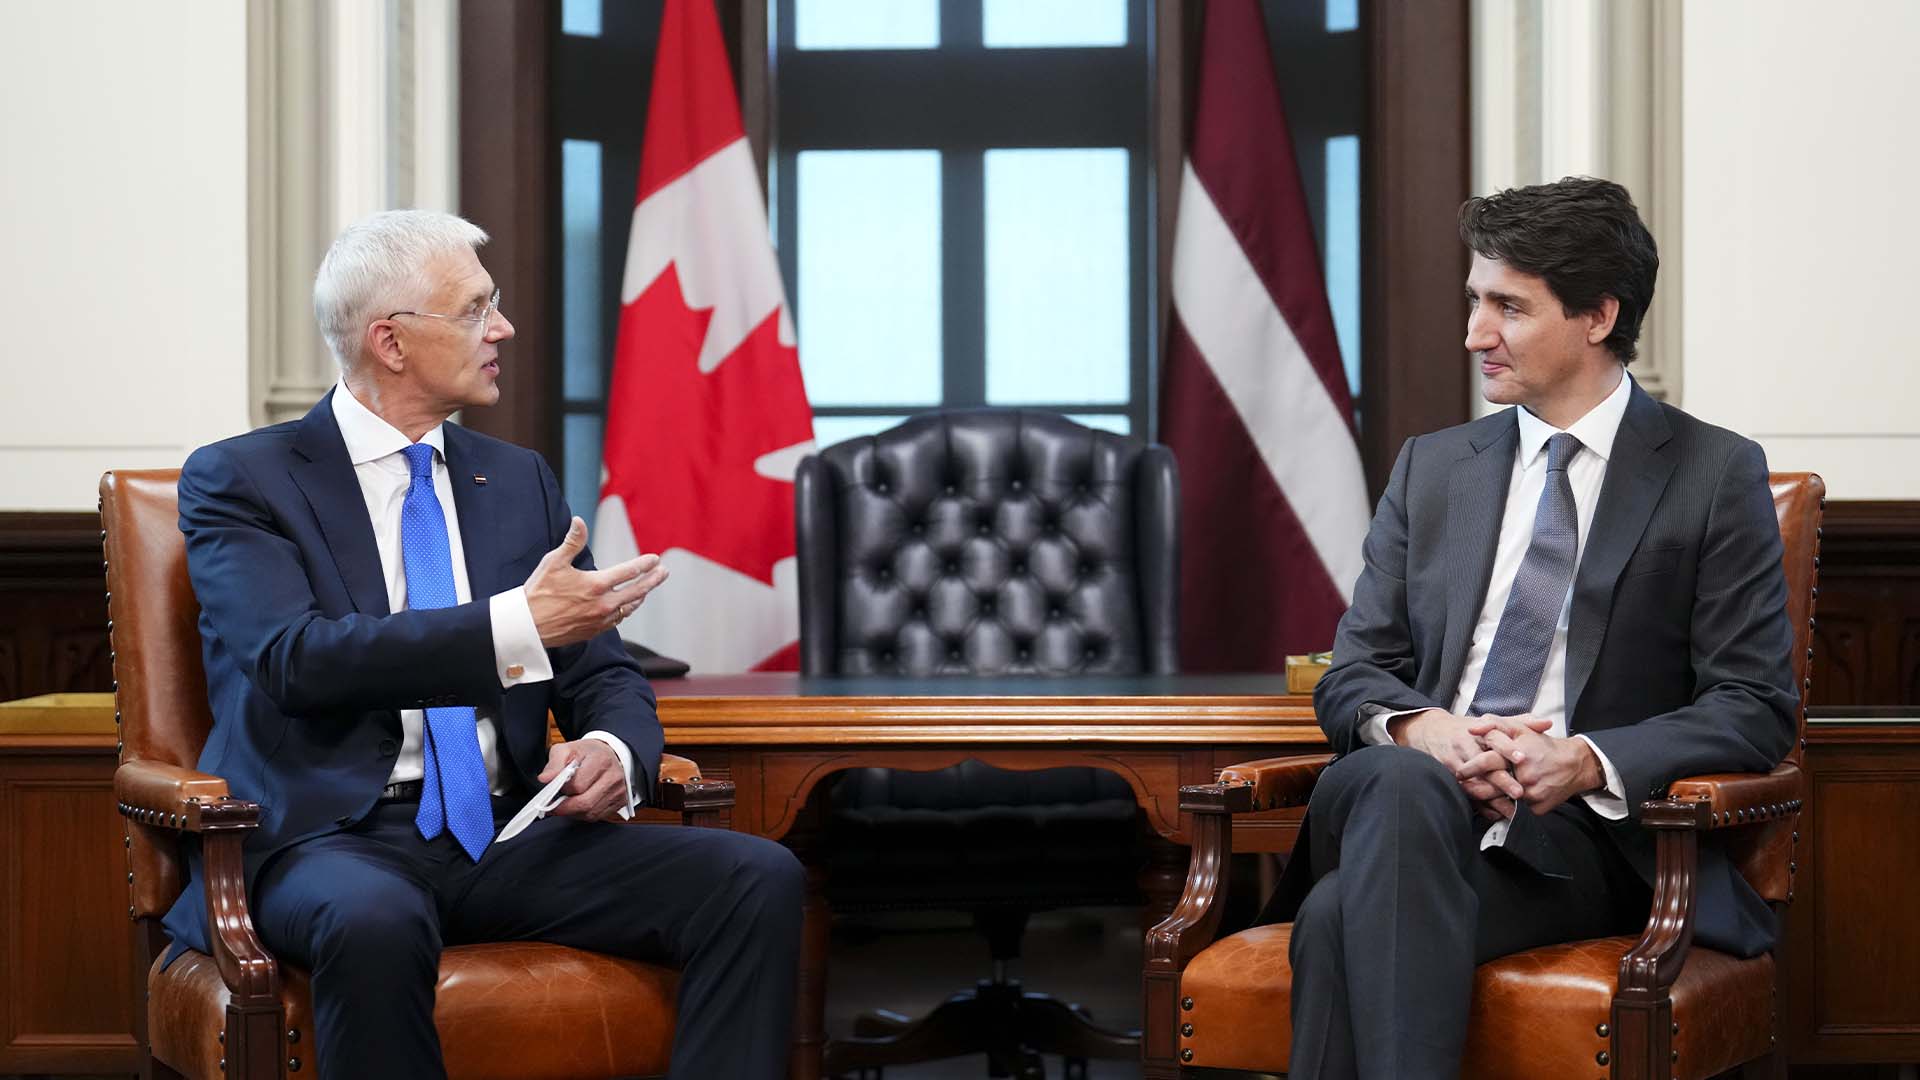 M. Kariņš devait transmettre sa demande directement au premier ministre Justin Trudeau, plus tard jeudi, lors d'un tête-à-tête à Ottawa.